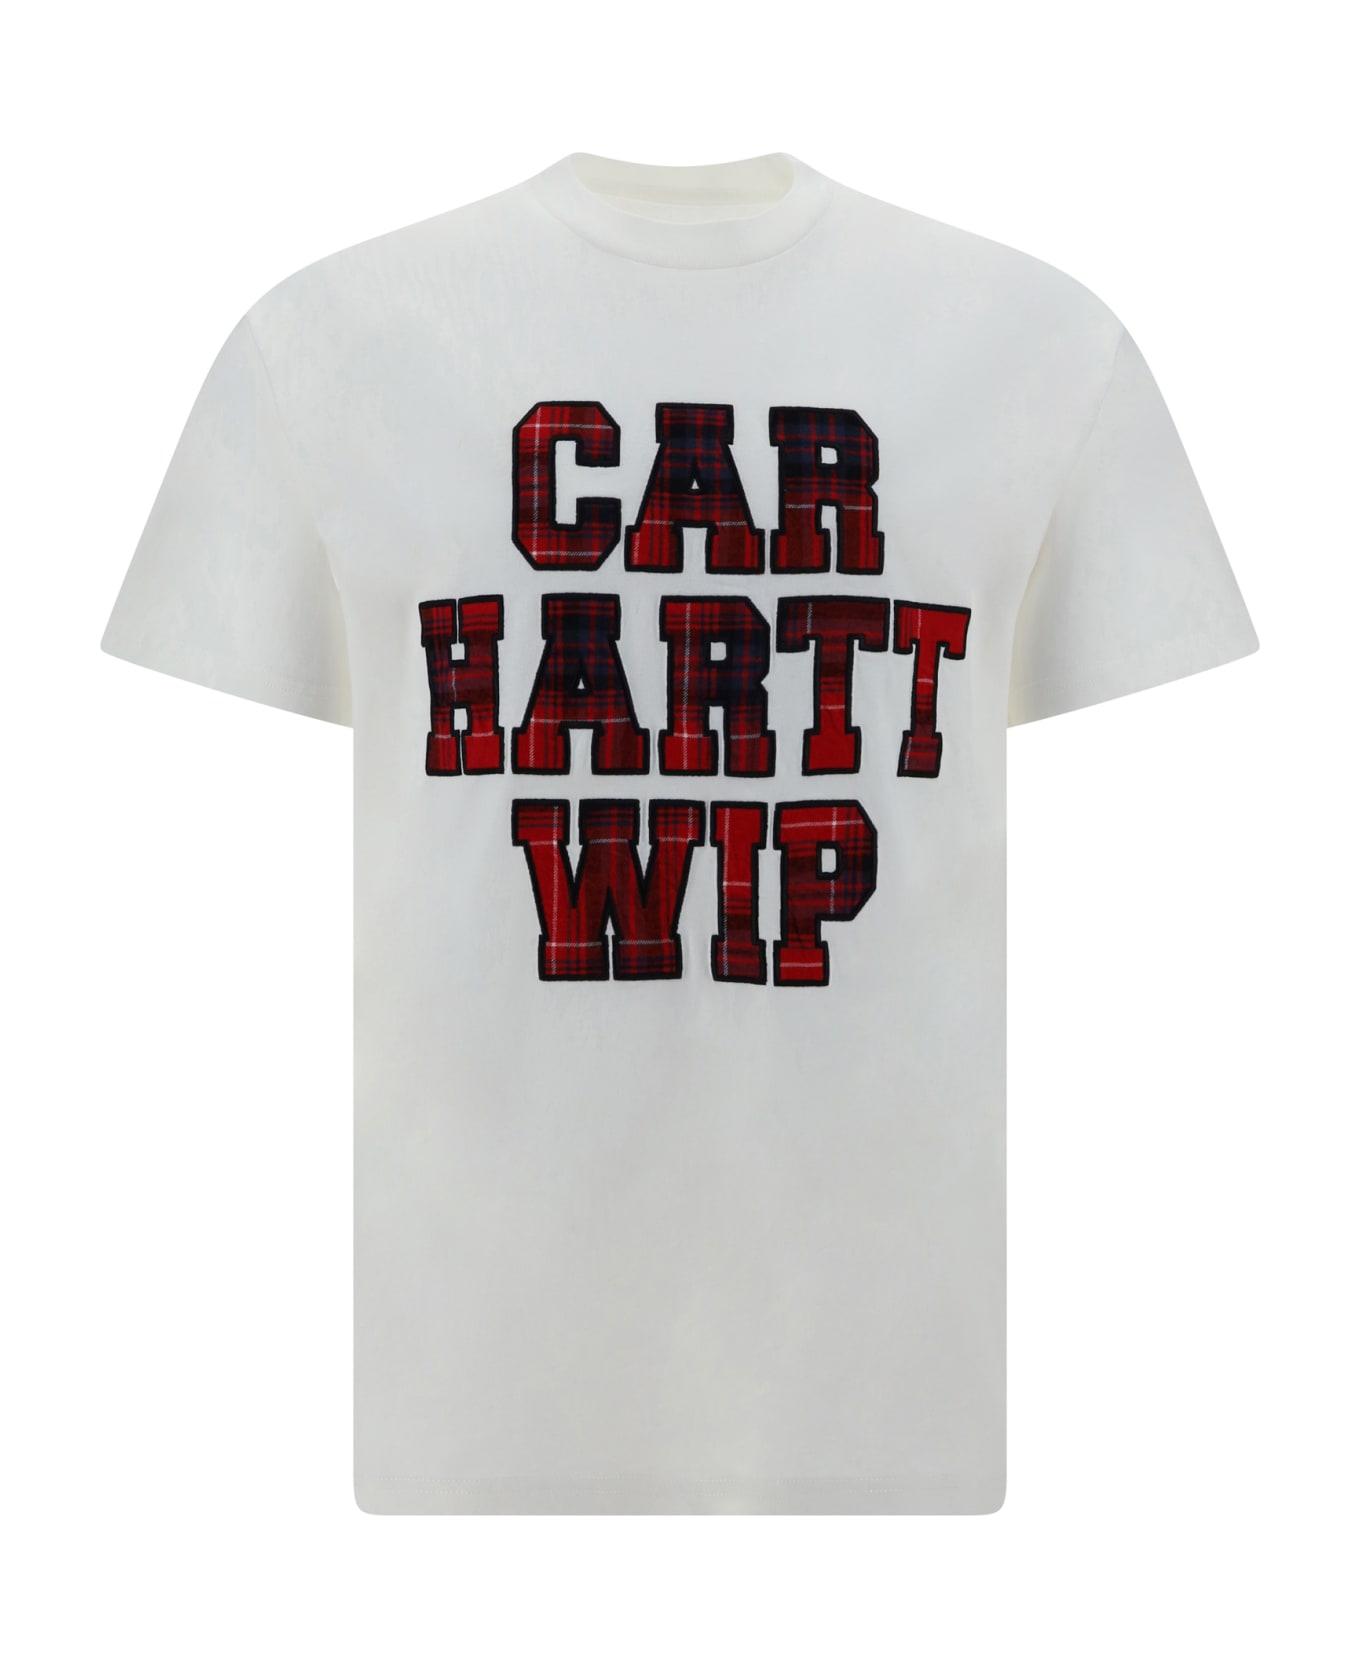 Carhartt WIP Wiles T-shirt - White シャツ